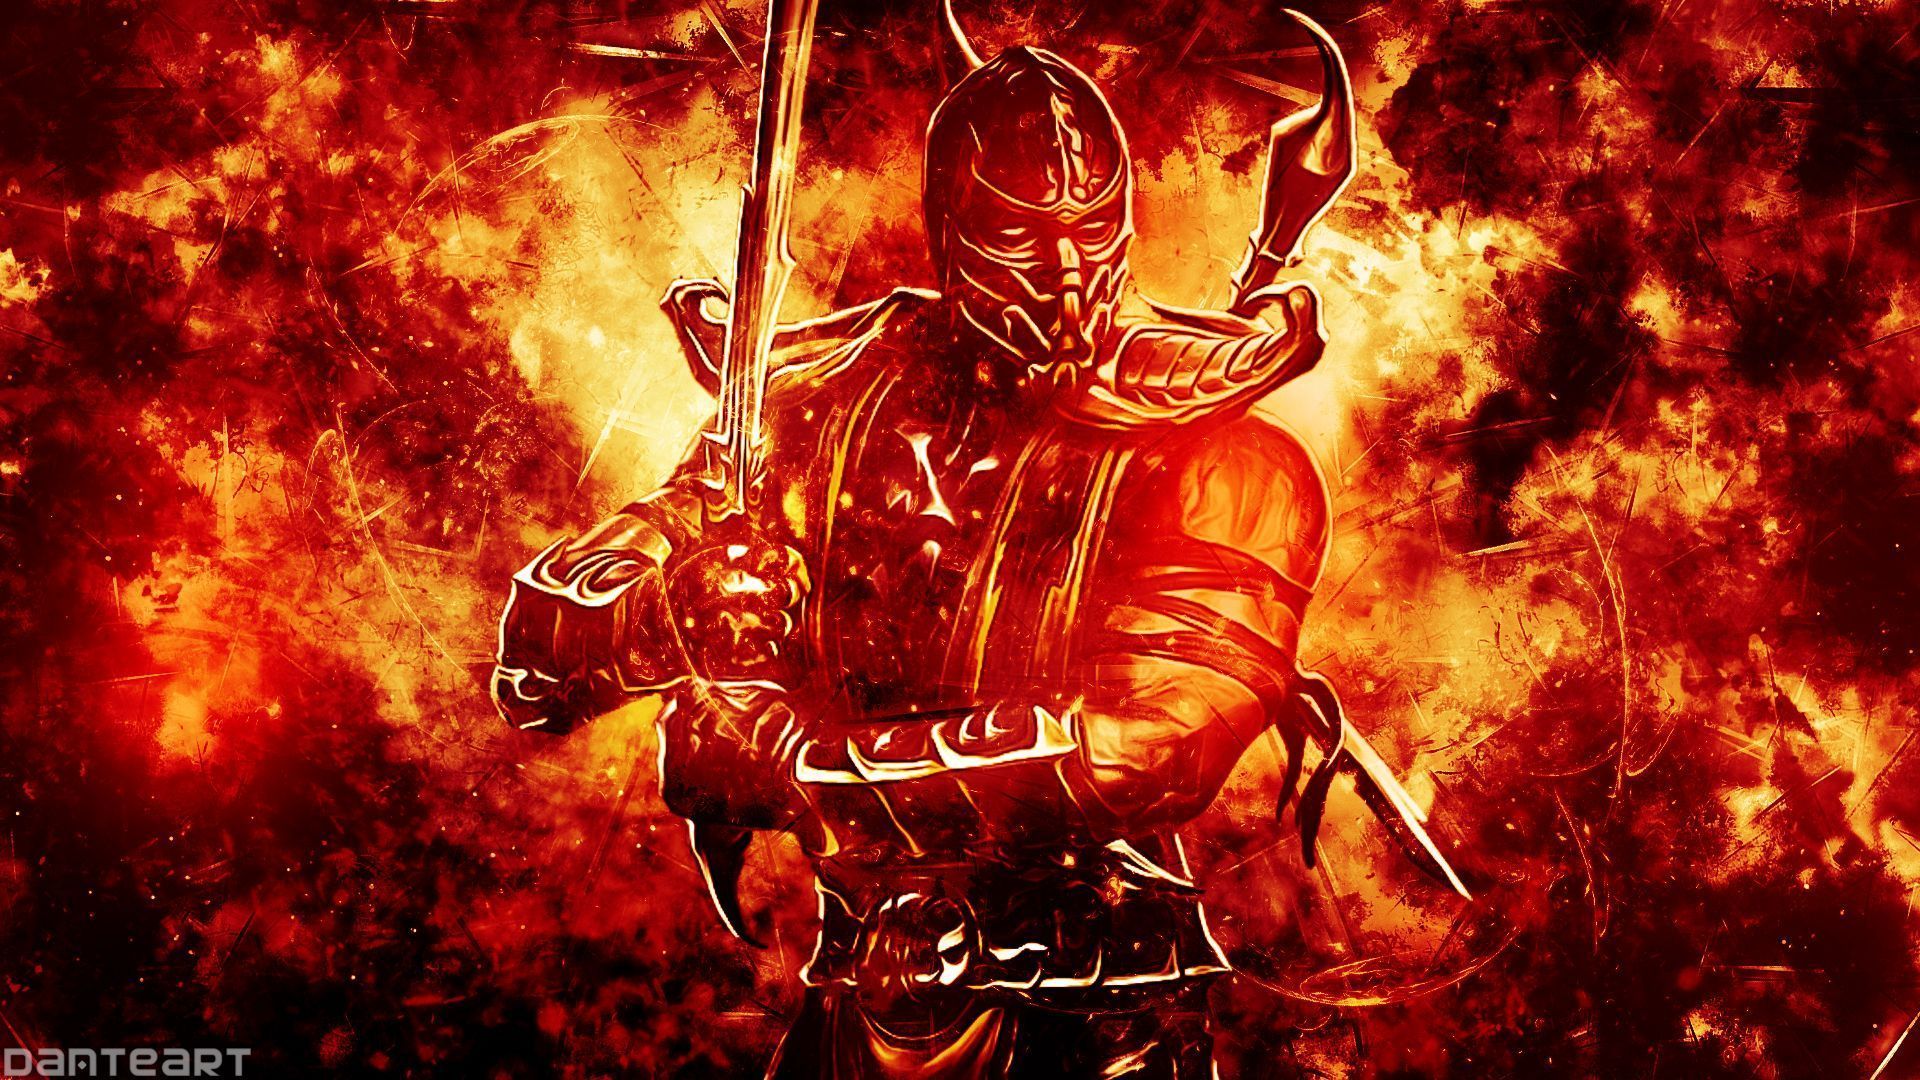 Mortal Kombat X Scorpion Wallpaper by DanteArtWallpapers on DeviantArt